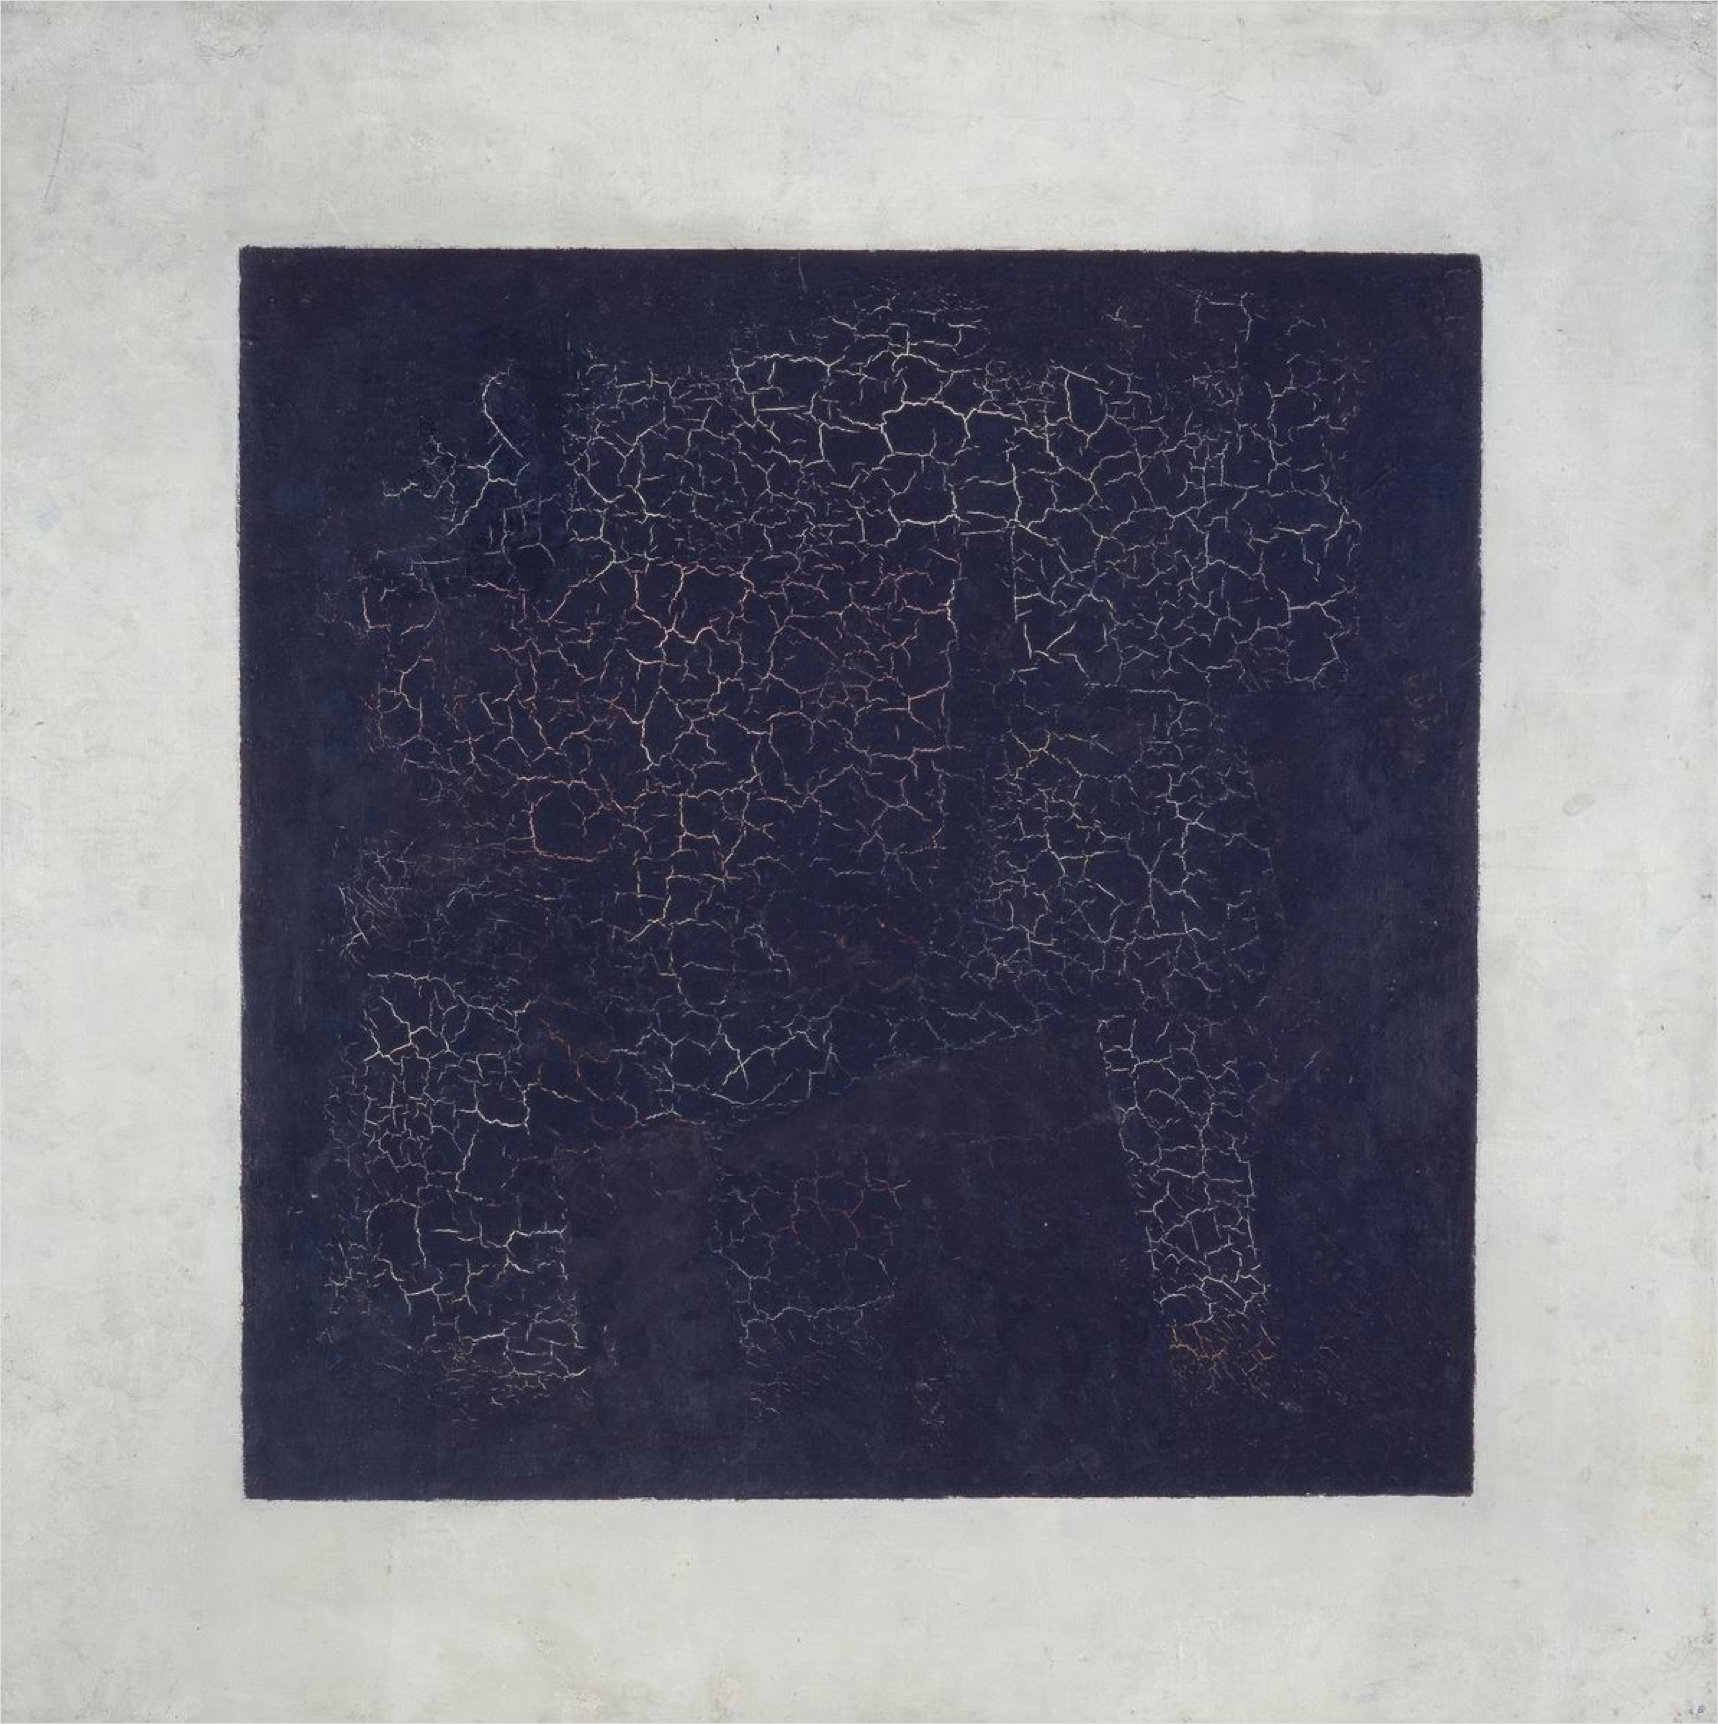 Black Suprematic Square, de Kazimir Malevich, 1915.